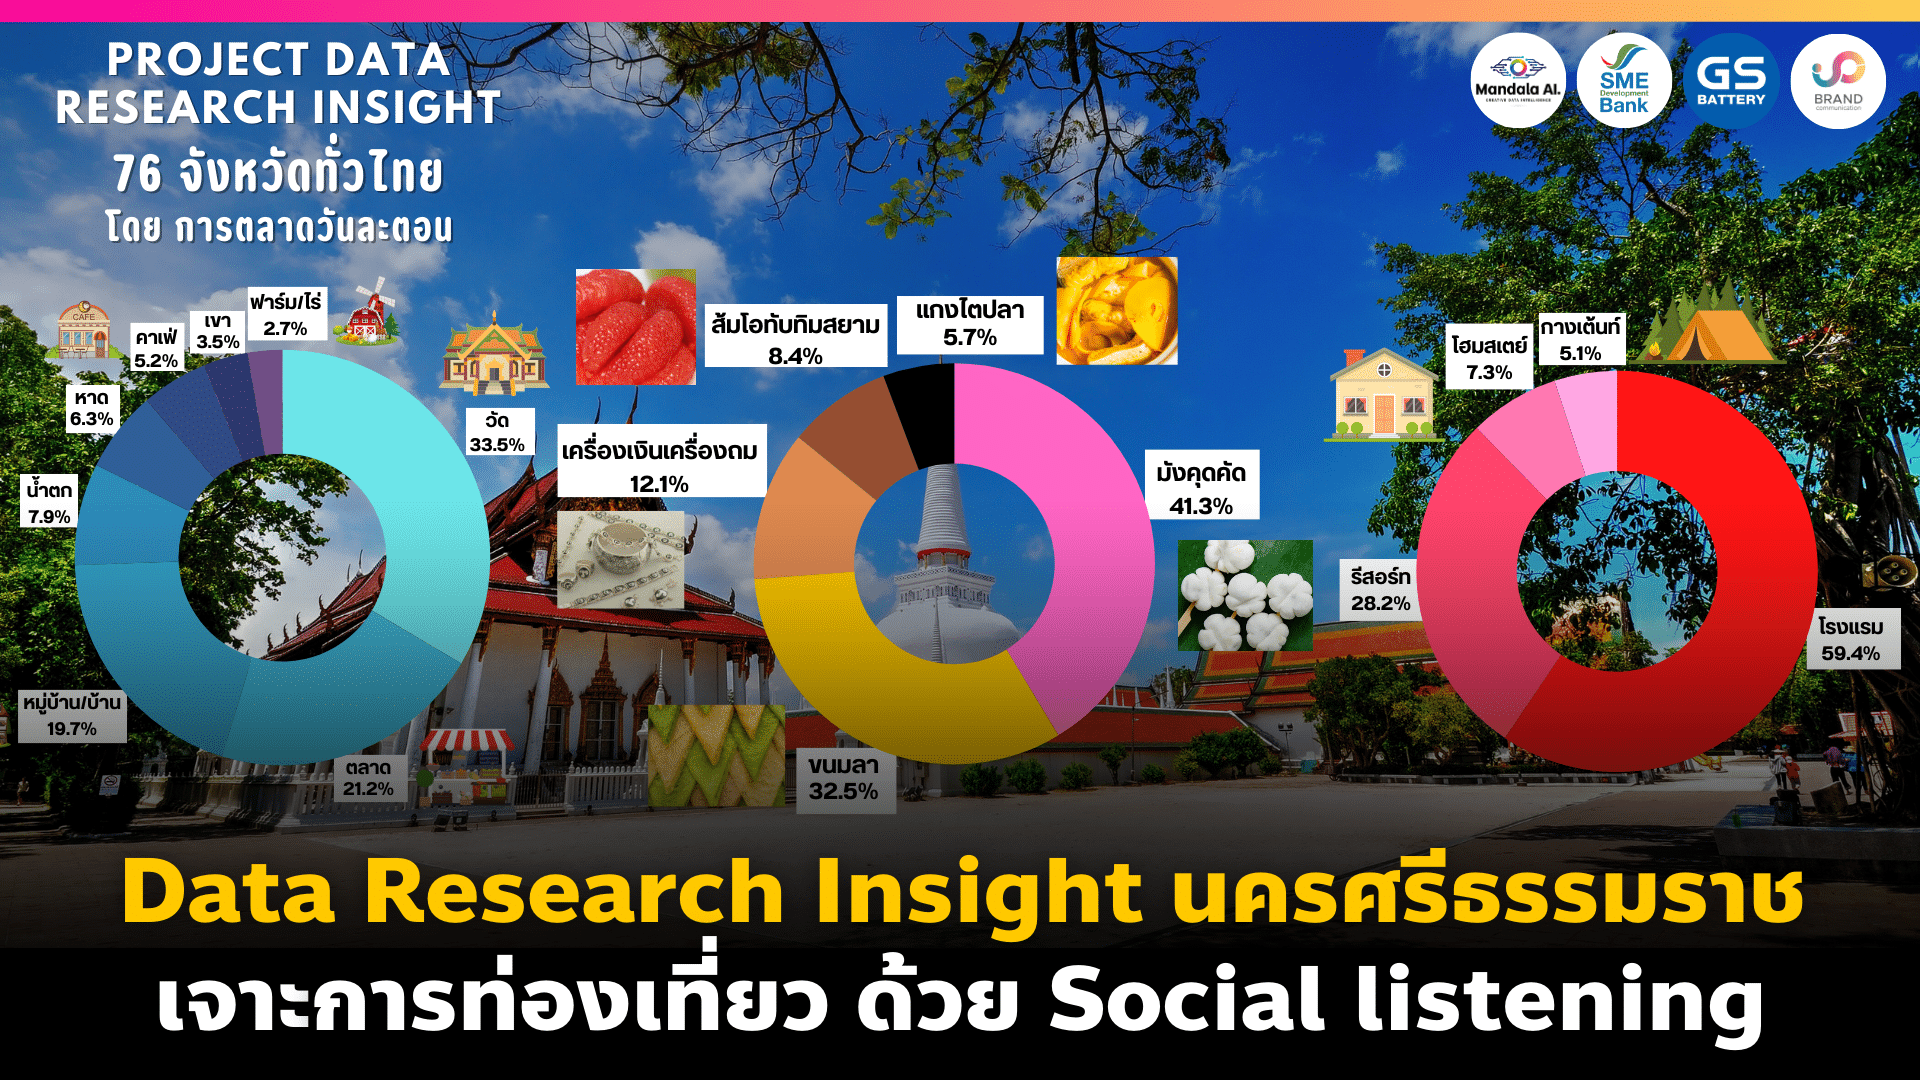 Data Research Insight นครศรีธรรมราช เจาะการท่องเที่ยวด้วย Social listening